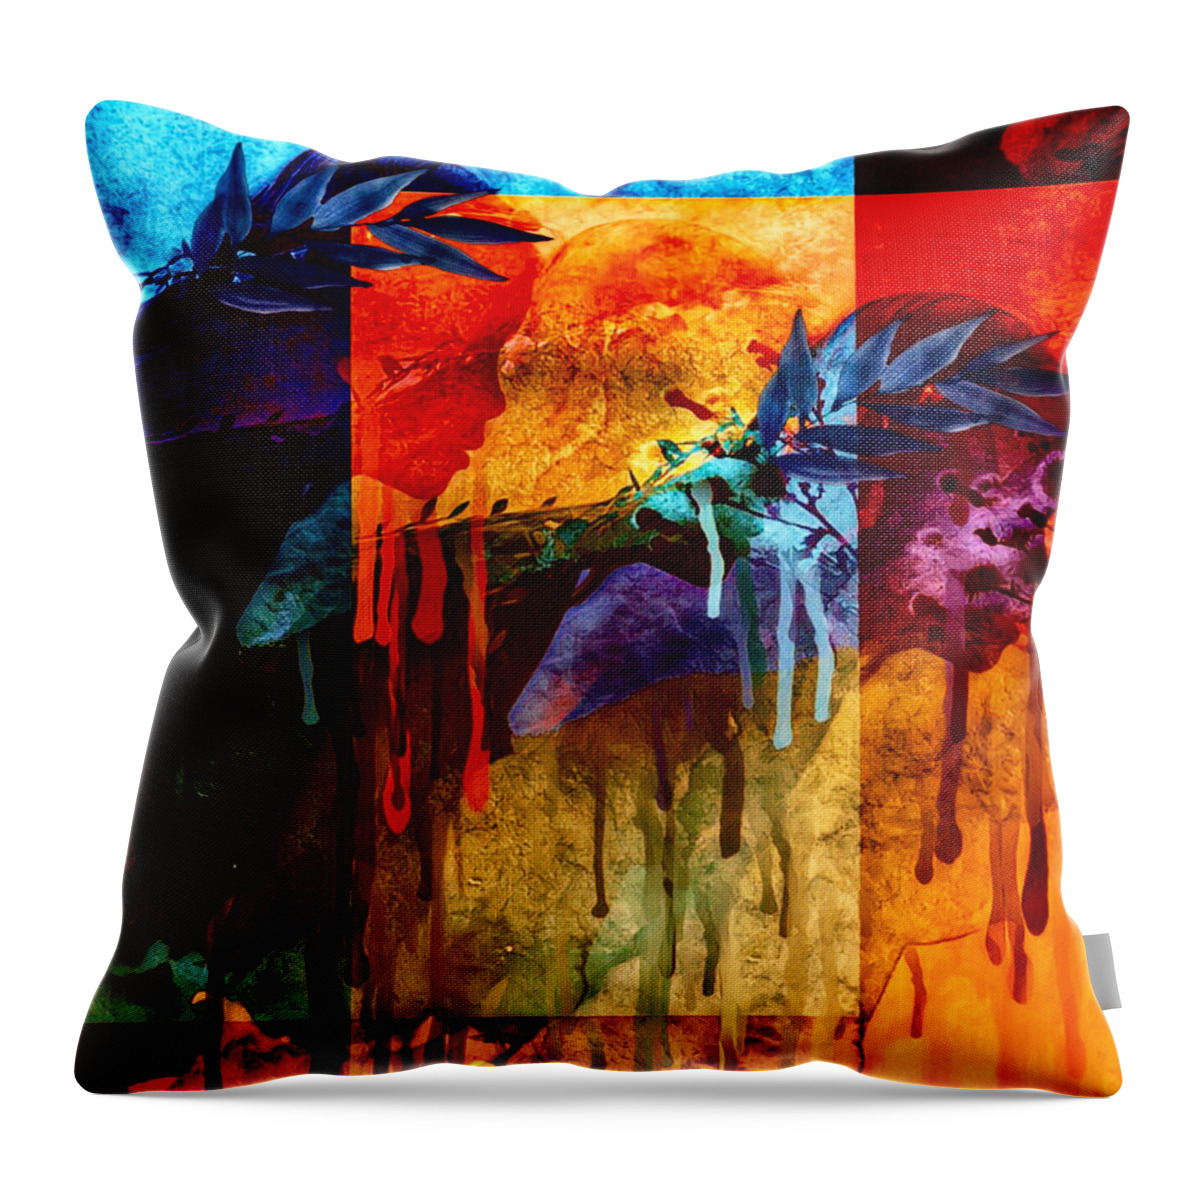 Bearer Throw Pillow featuring the digital art Bearer by Canessa Thomas